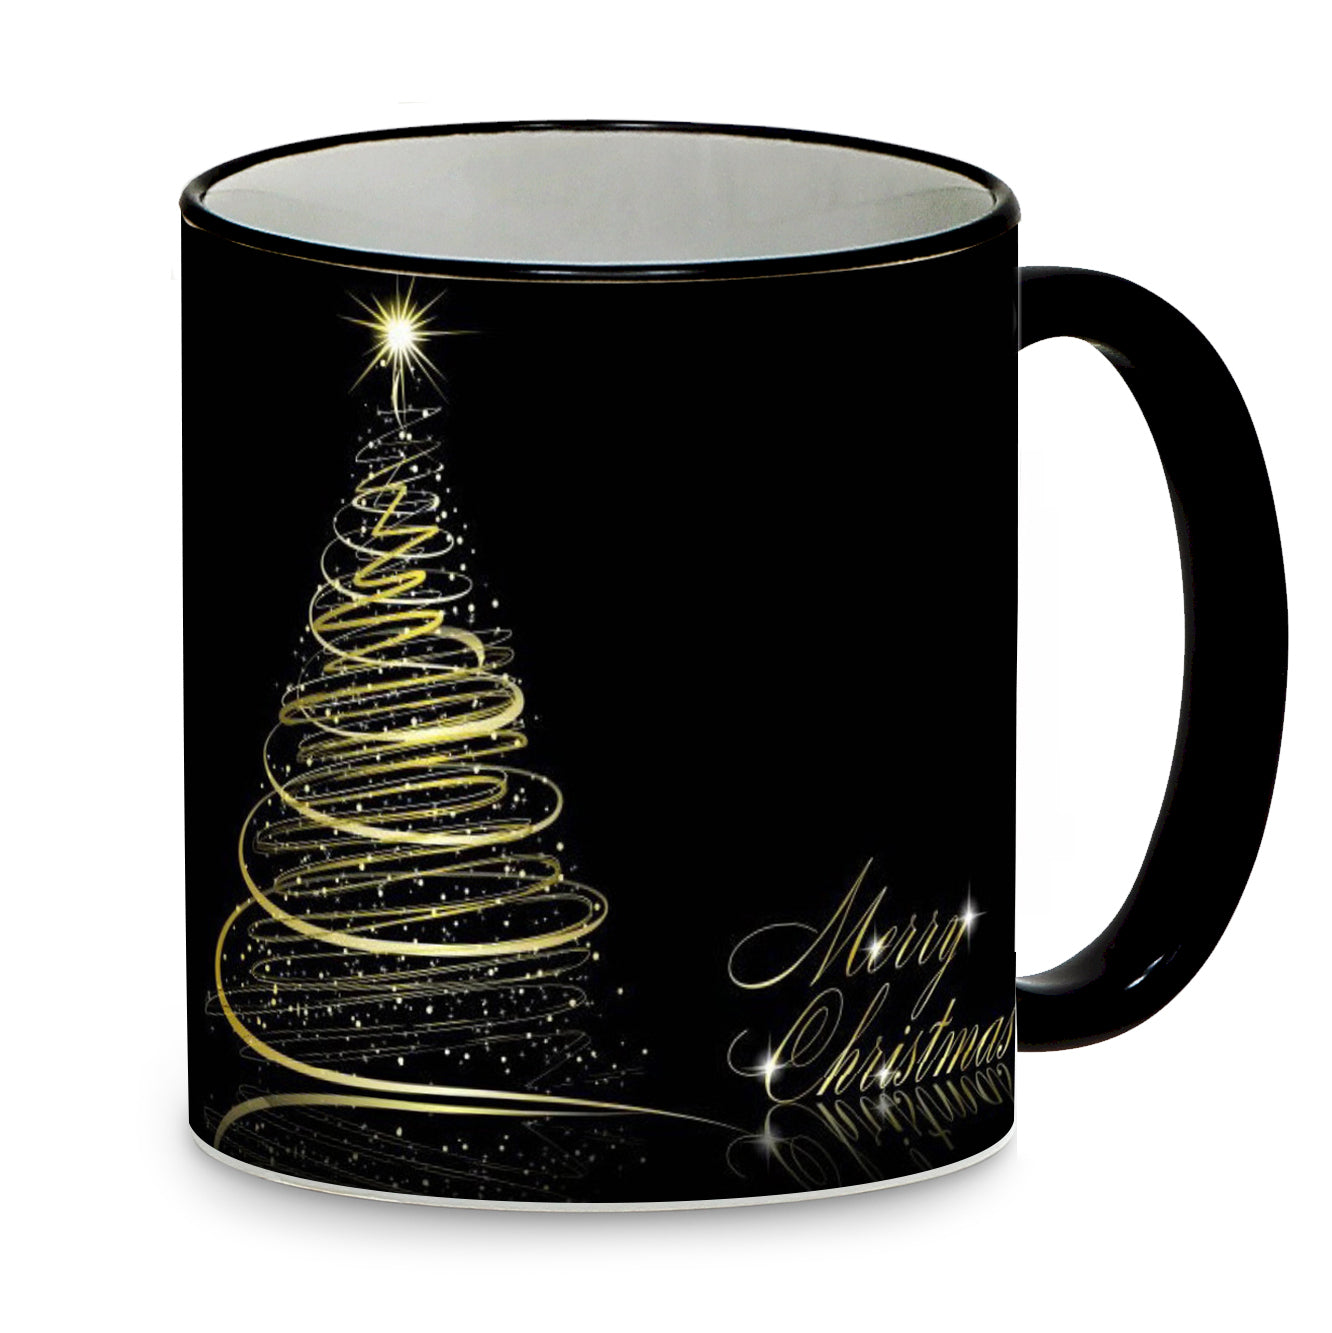 SUBLIMART: Christmas - Mug with black handle and rim (Designs #17)